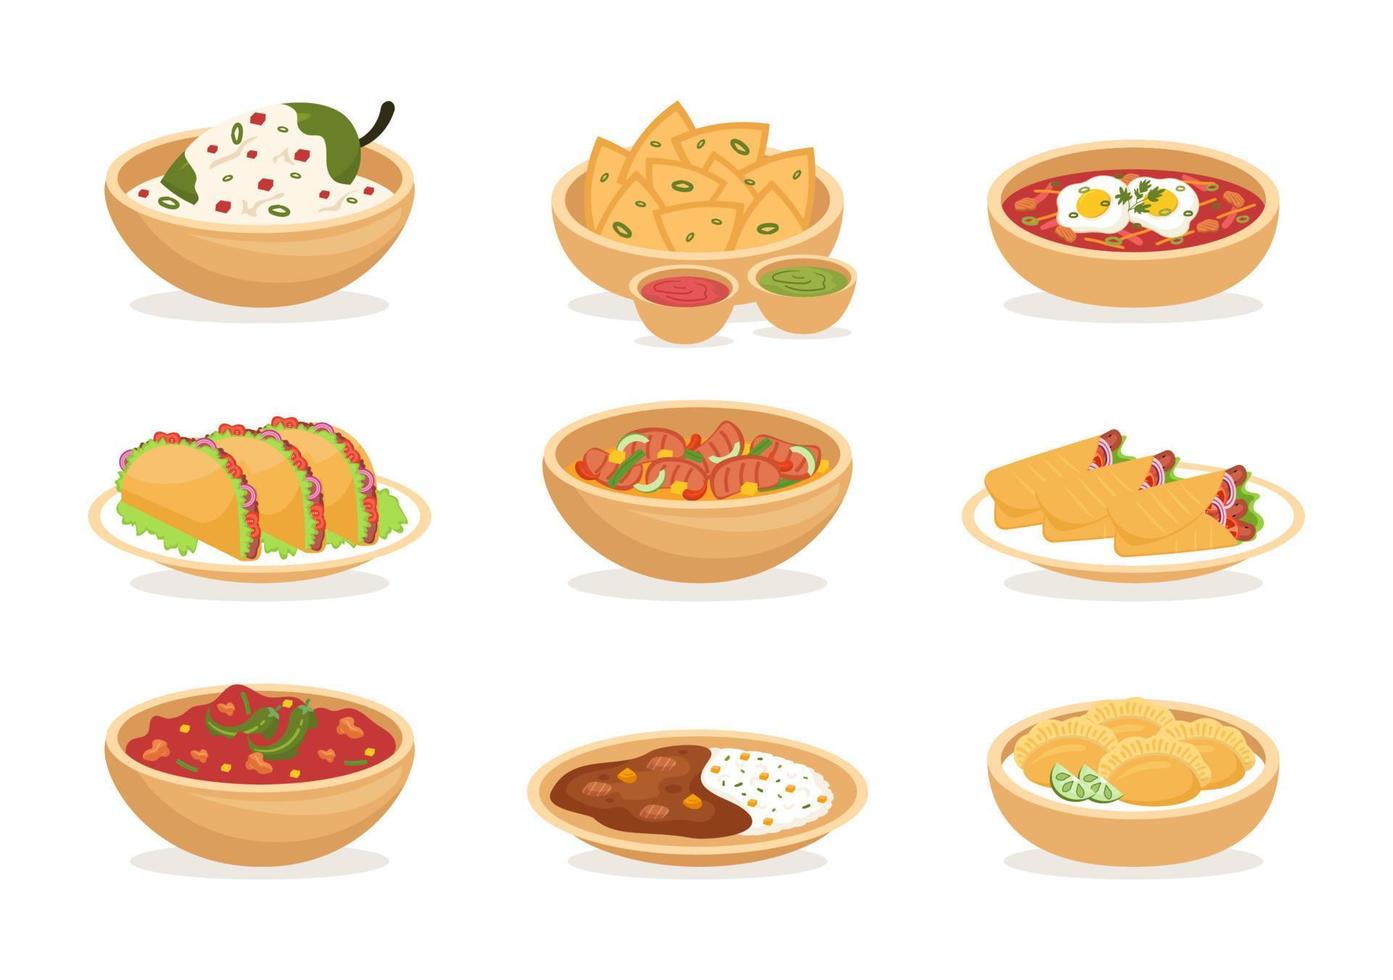 mexikanisches lebensmittelrestaurant mit verschiedenen köstlichen traditionellen küchetacos, nachos und anderem auf flacher hand gezeichneter schablonenillustration der karikatur vektor